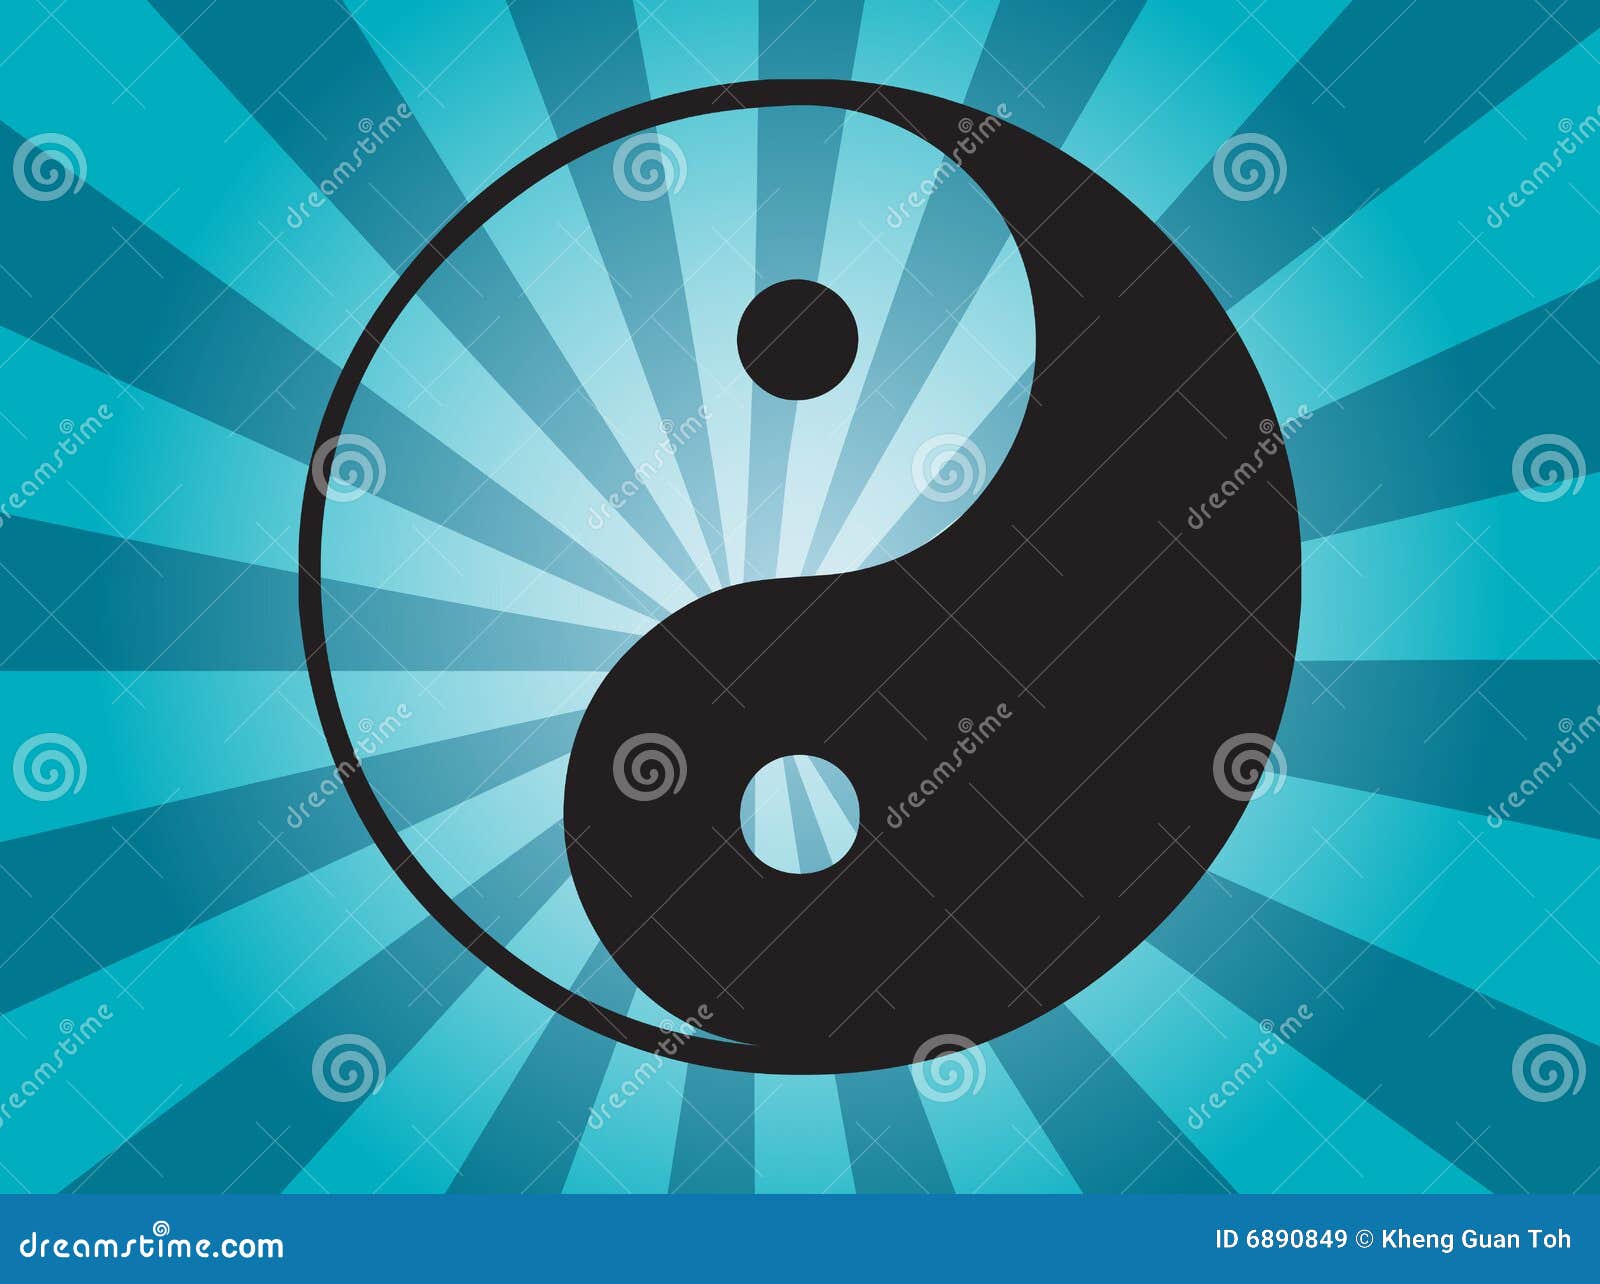 Yin Yang Wallpaper Stock Illustrations – 1,666 Yin Yang Wallpaper Stock  Illustrations, Vectors & Clipart - Dreamstime